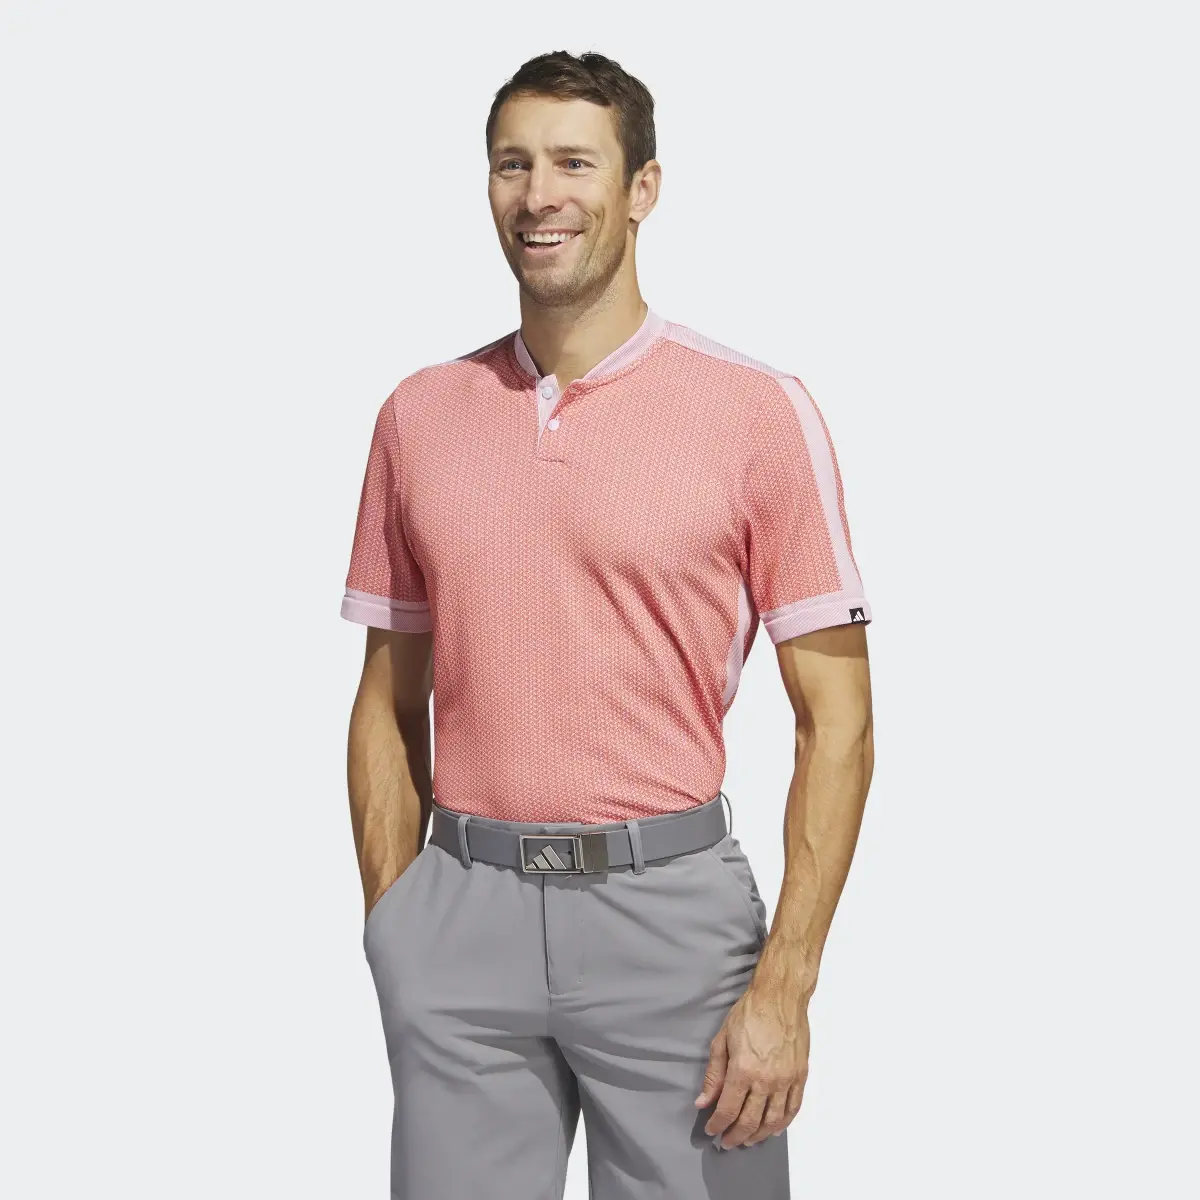 Adidas Ultimate365 Tour Textured PRIMEKNIT Golf Poloshirt. 2